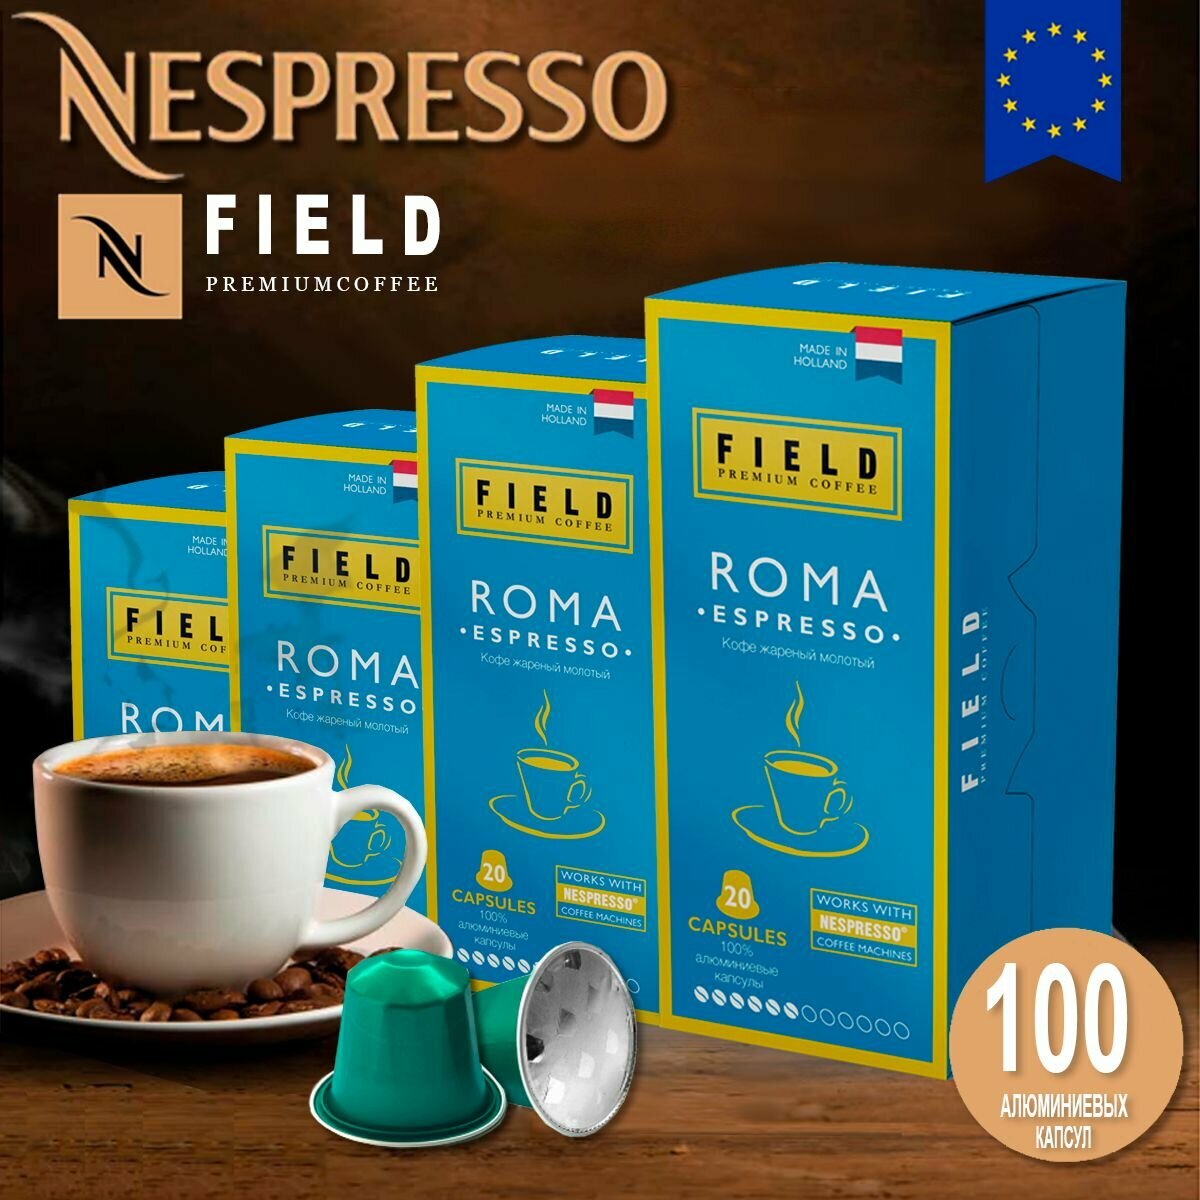 Кофе в капсулах Nespresso 100 шт алюминиевых капсул, молотый Field Premium Coffee Espresso Roma. Интенсивность вкуса 6